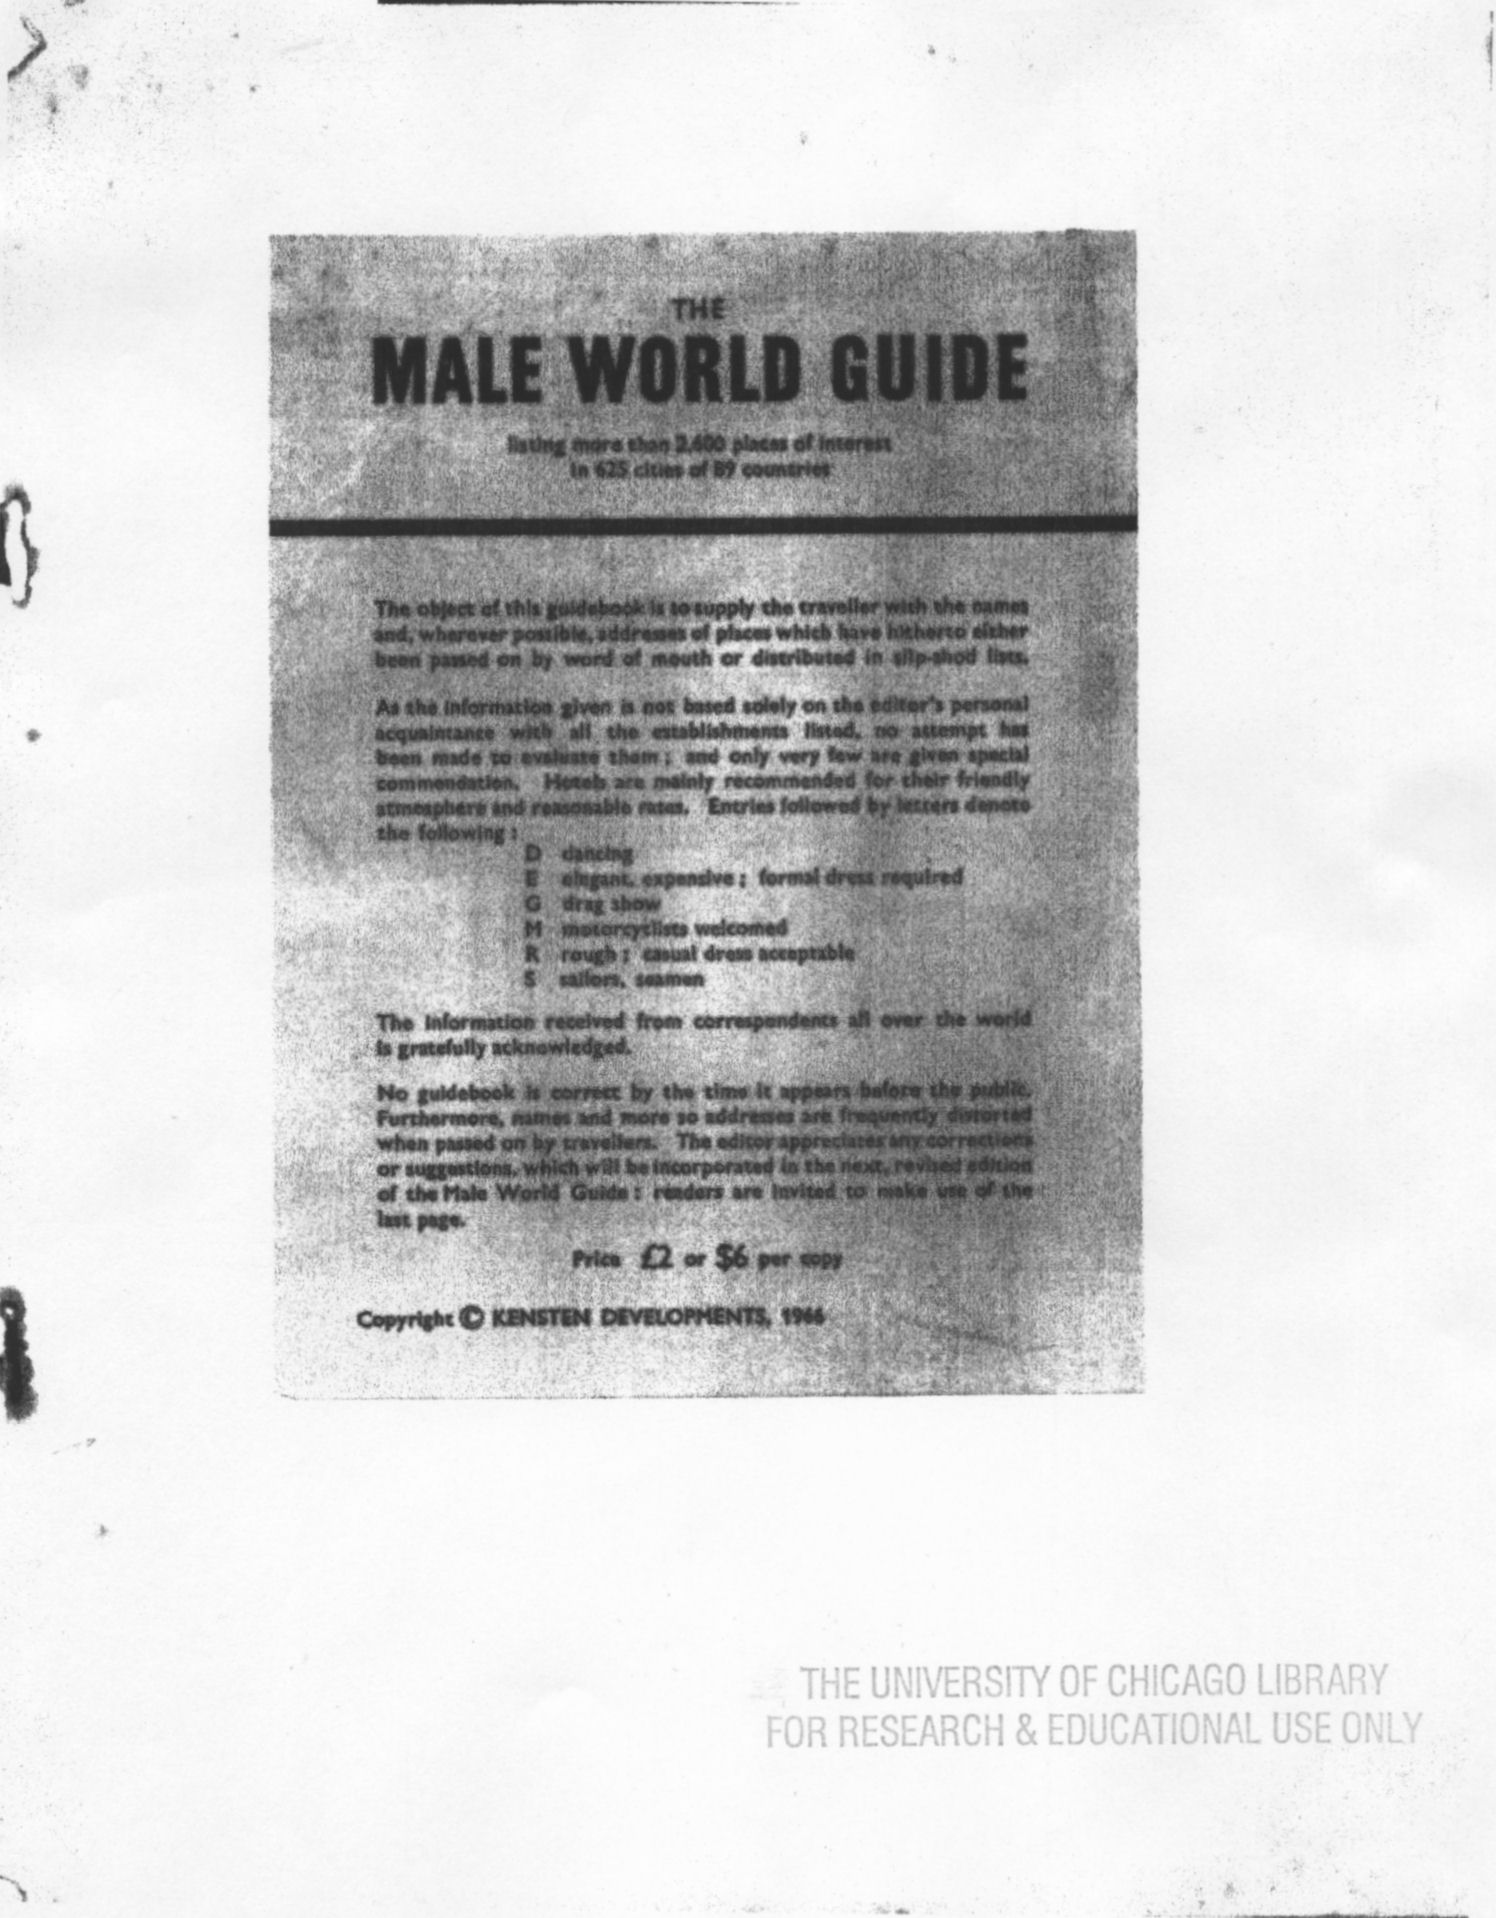 Male World Guide, 1966